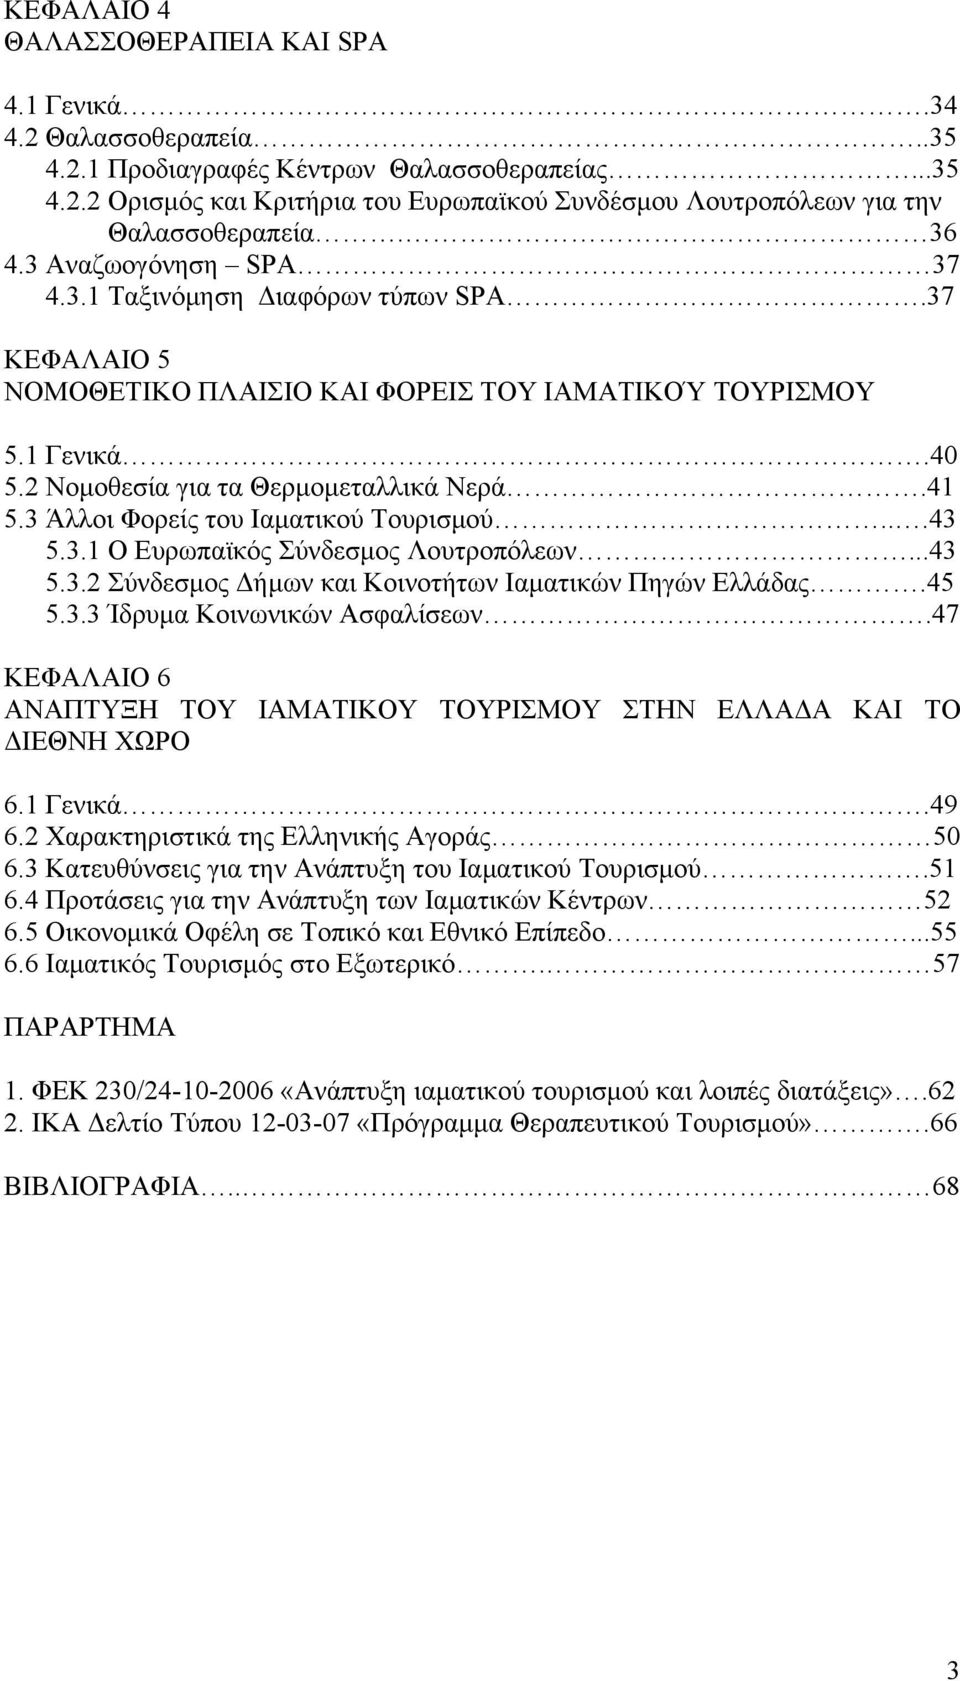 3 Άλλοι Φορείς του Ιαματικού Τουρισμού...43 5.3.1 Ο Ευρωπαϊκός Σύνδεσμος Λουτροπόλεων...43 5.3.2 Σύνδεσμος Δήμων και Κοινοτήτων Ιαματικών Πηγών Ελλάδας.45 5.3.3 Ίδρυμα Κοινωνικών Ασφαλίσεων.